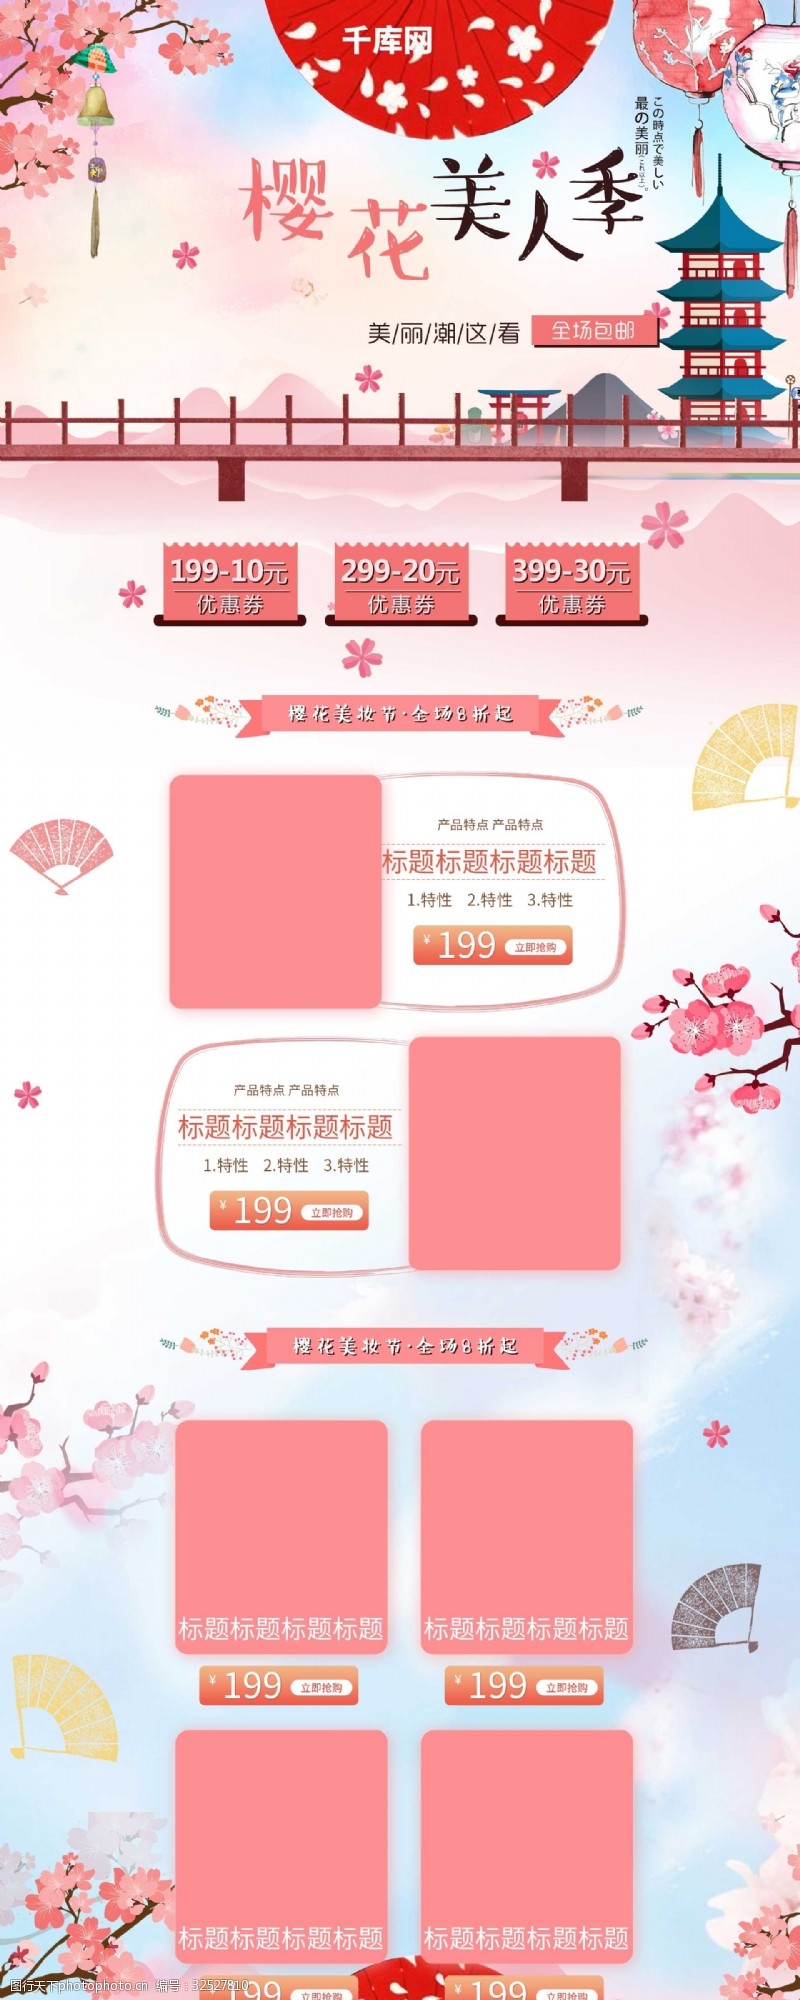 全场商品5折粉色浪漫樱花日系美妆护肤首页模板